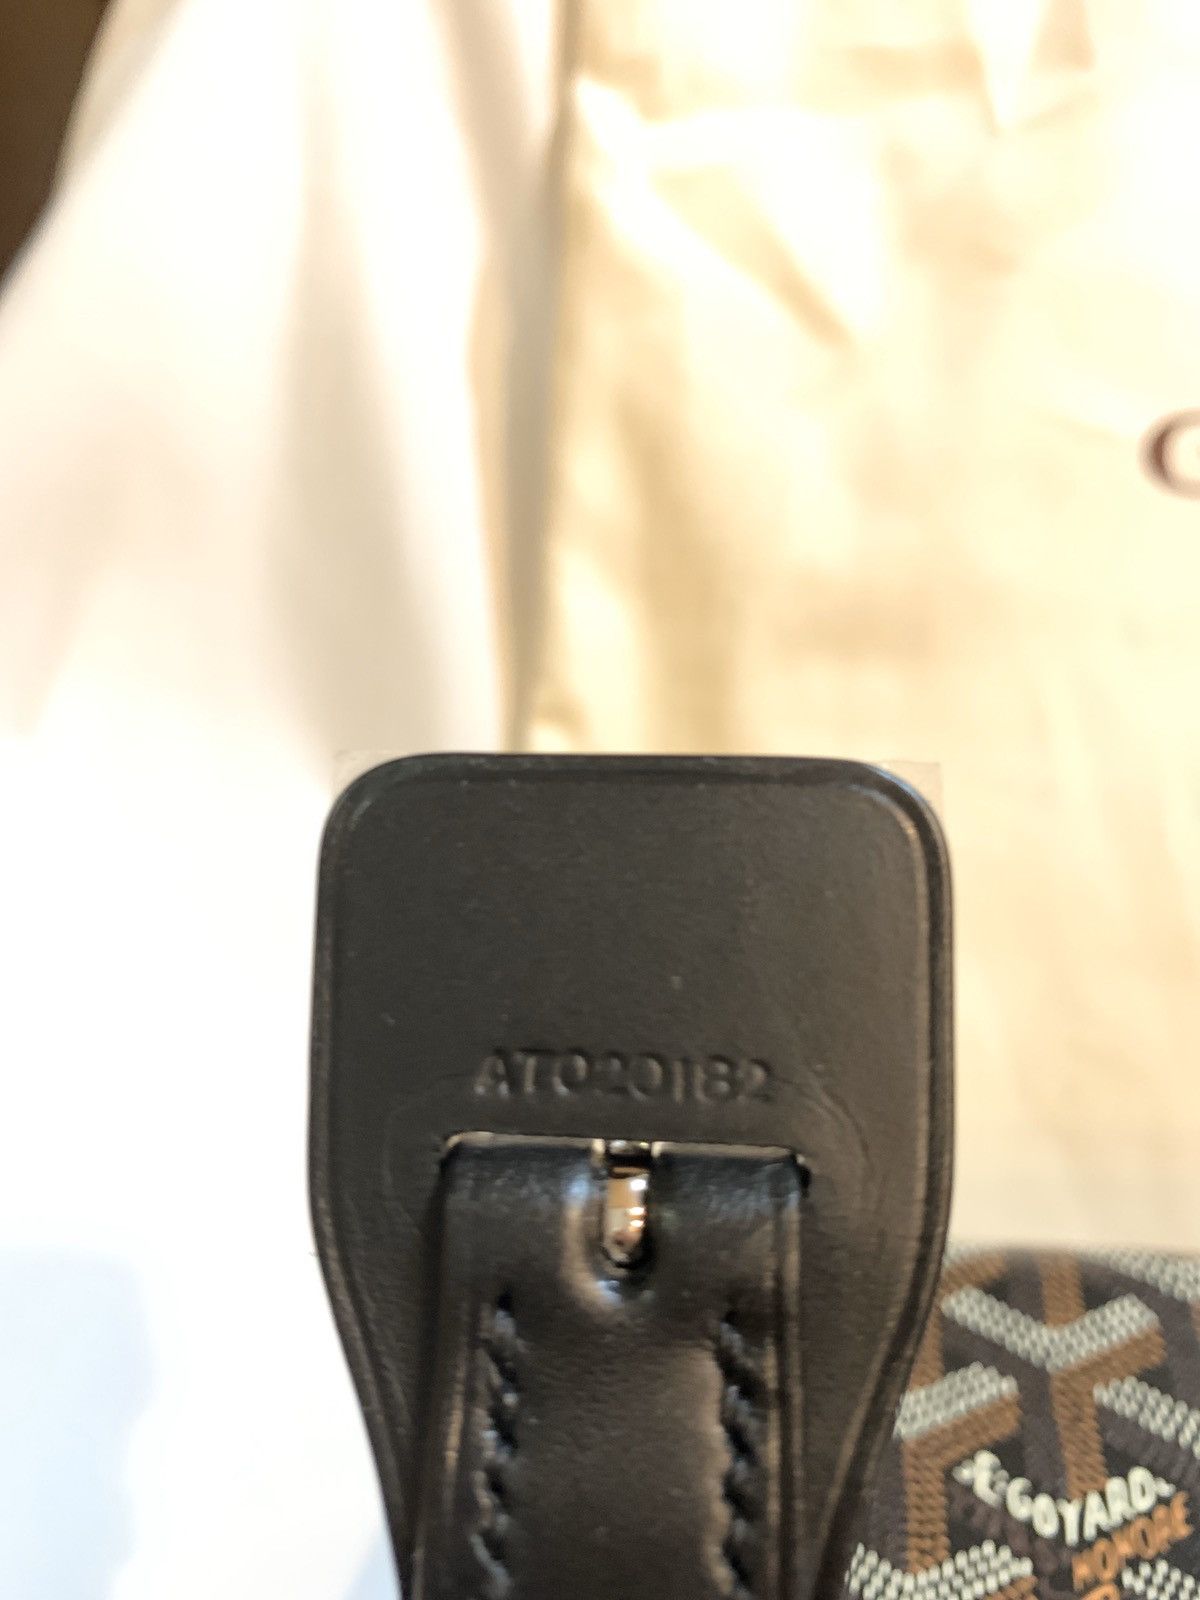 Goyard Goyard Coffret Montres 8 Watch Box